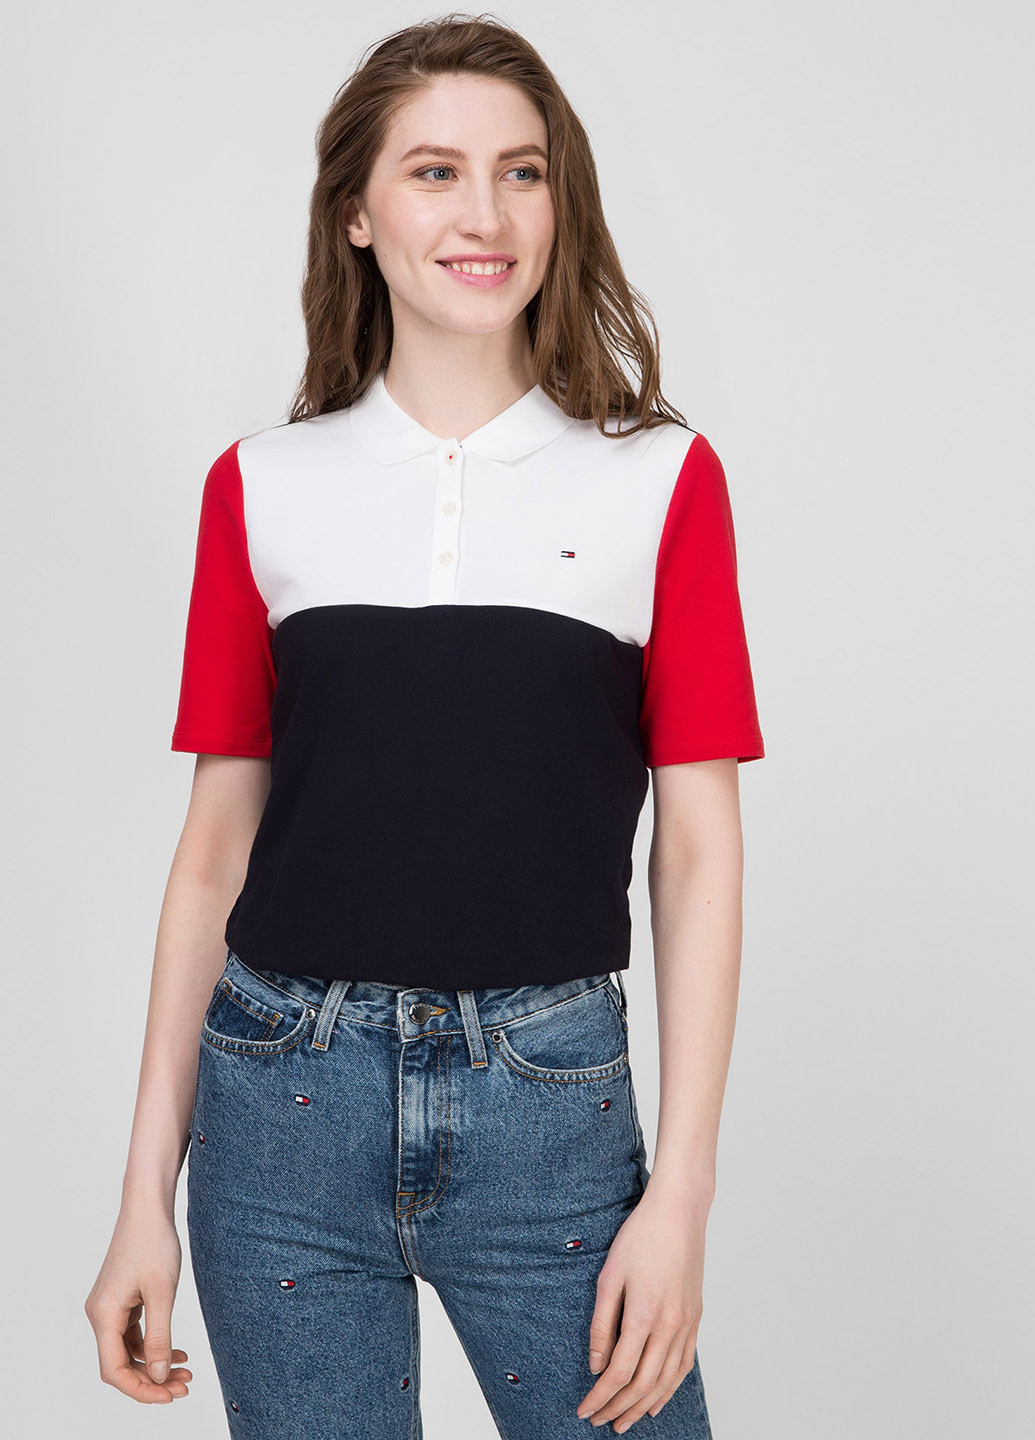 Цветная женская футболка-поло Tommy Hilfiger с логотипом